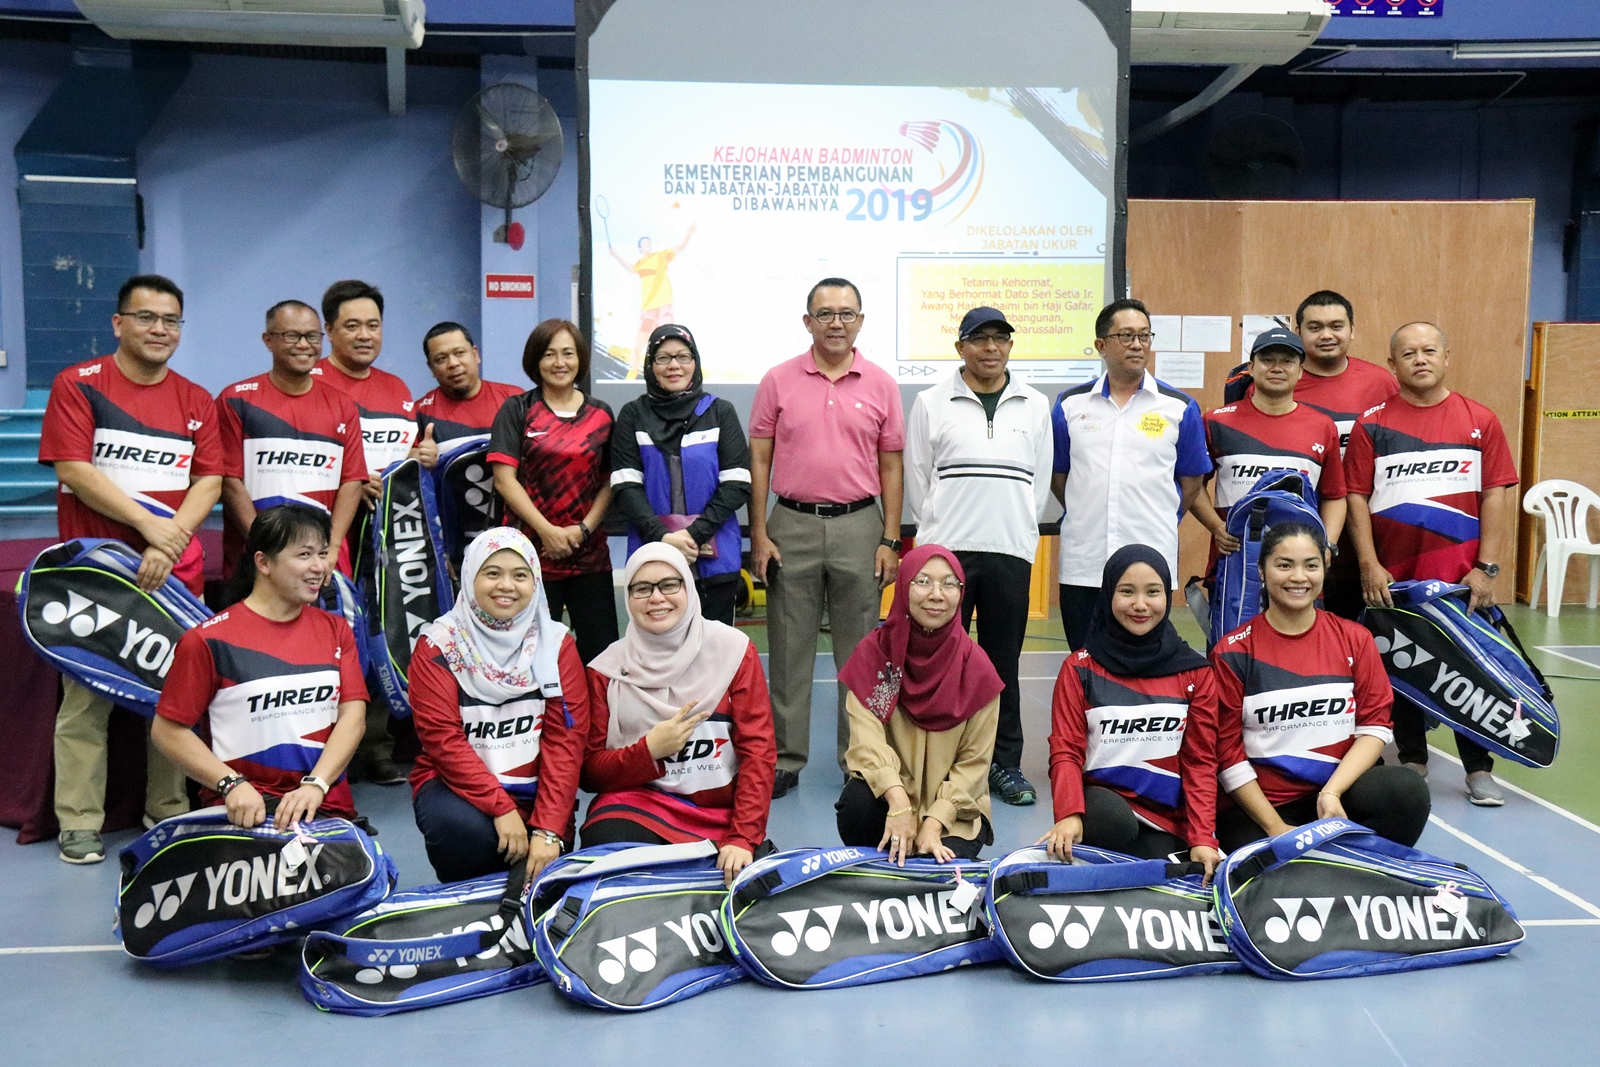 7_Kejohanan Badminton Kementerian Pembangunan tahun 2019.JPG